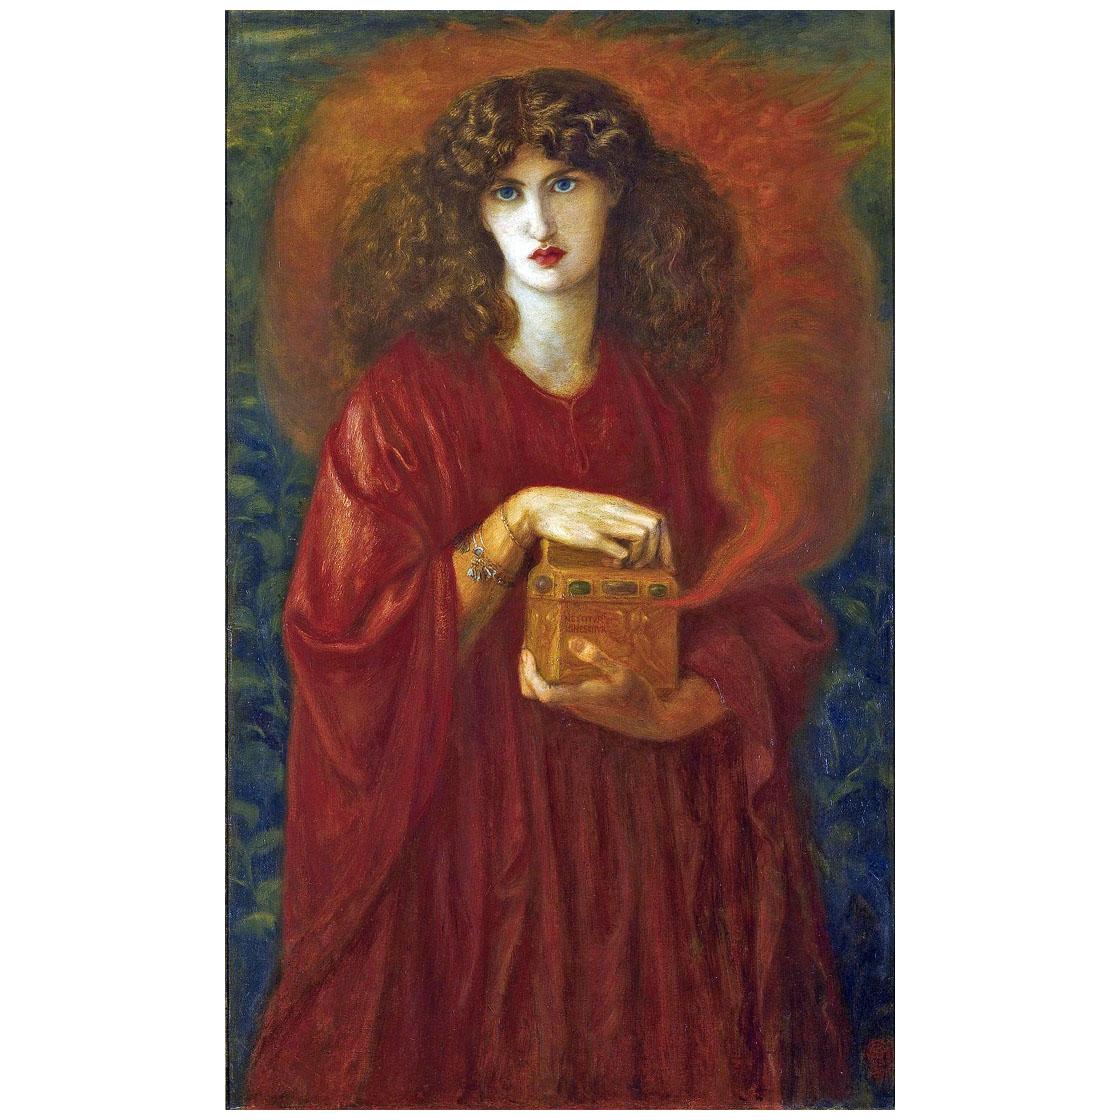 Dante Gabriel Rossetti. Pandora. 1871. Private collection